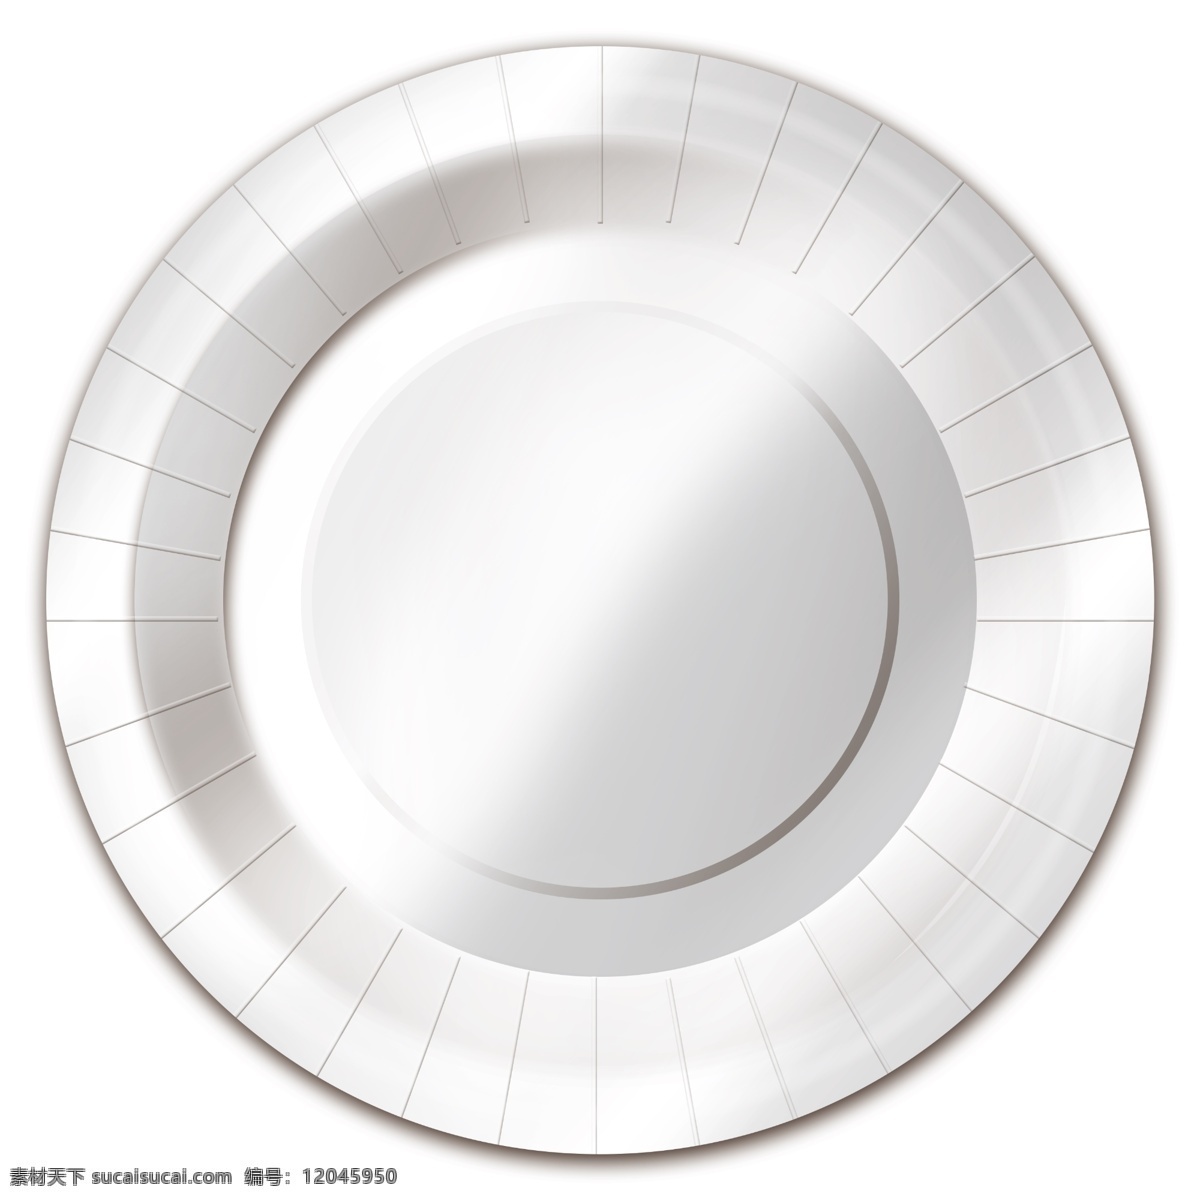 餐盘应用效果 盘子 盘 餐盘 纸盘 效果图 分层